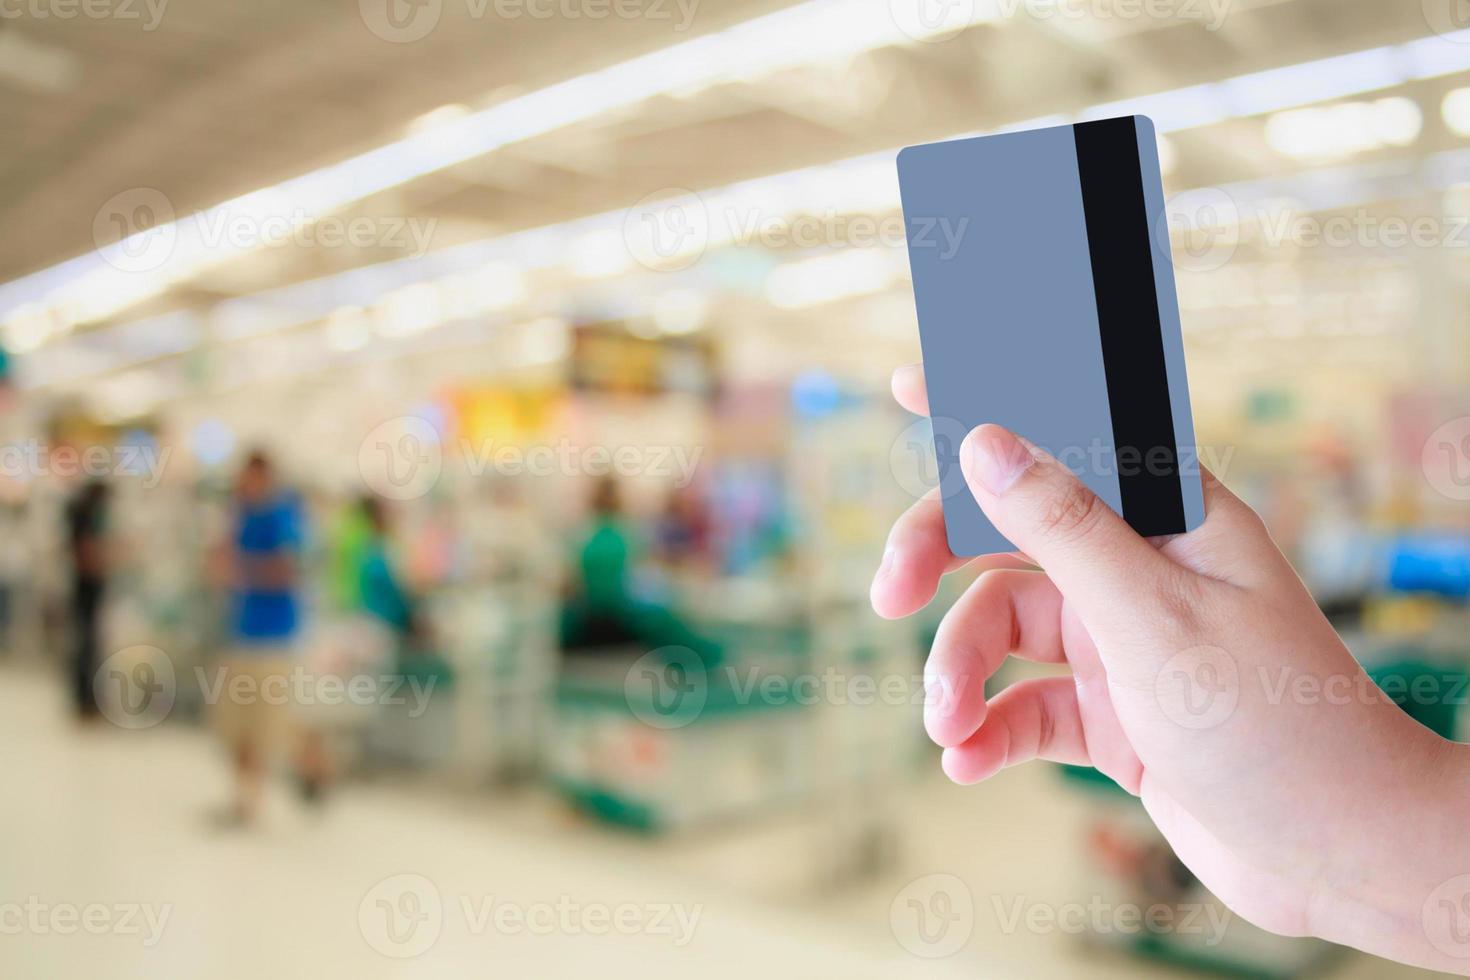 kopen met creditcard in supermarkt foto